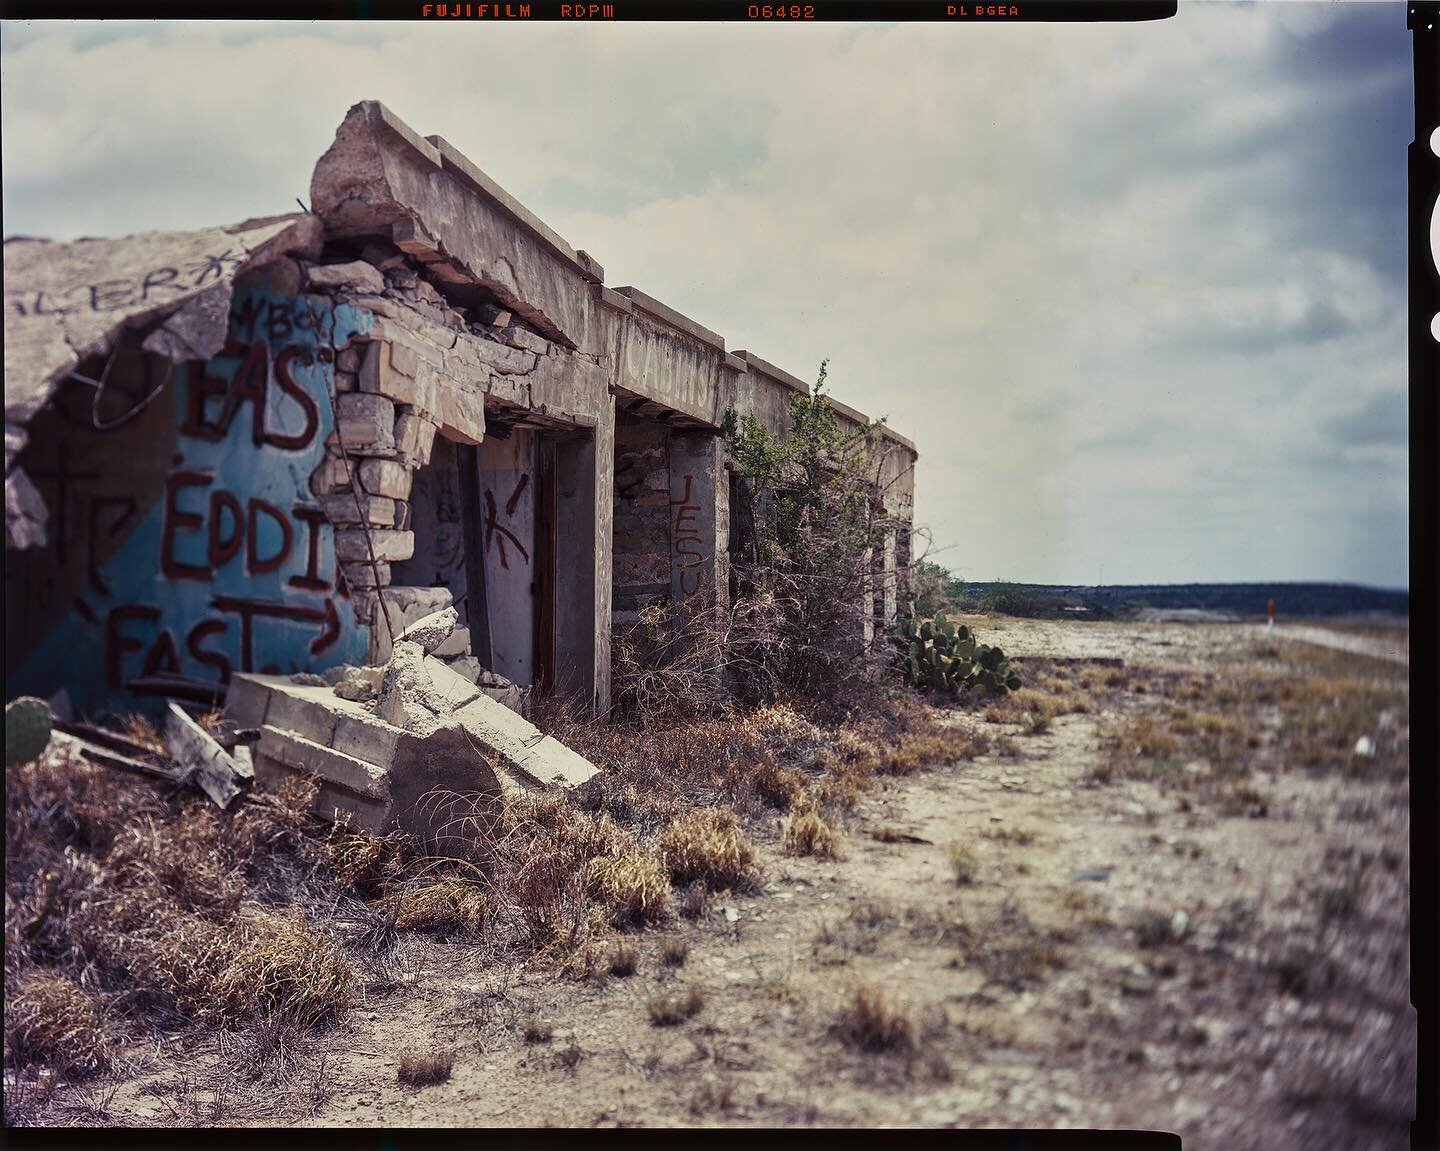 West Texas ruins 
&mdash;
Expired #fujifilm E6 #4x5film @lonestardarkroom #ruins #westtexas #forgotten